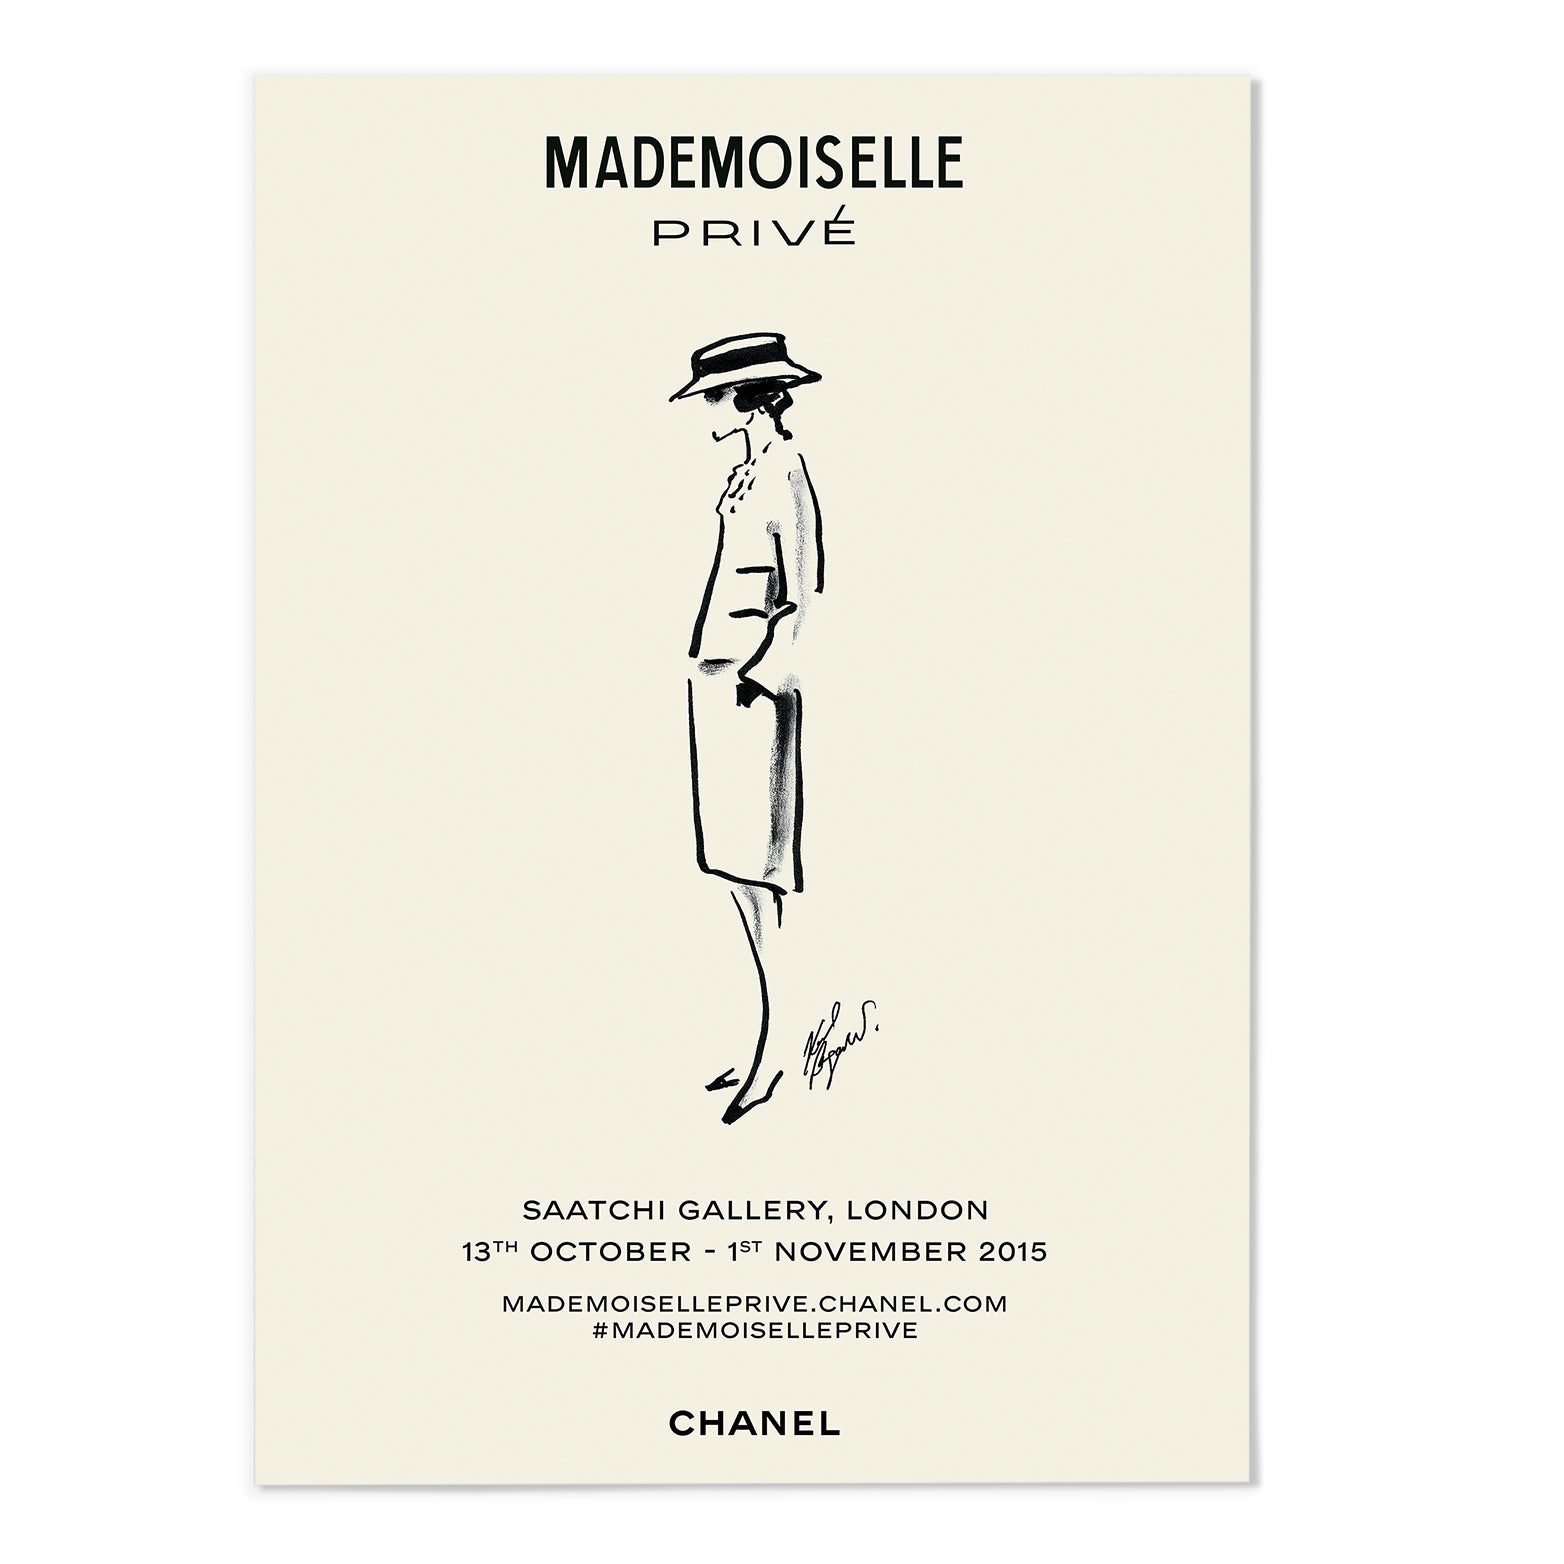 Mademoiselle Illustration Art Print